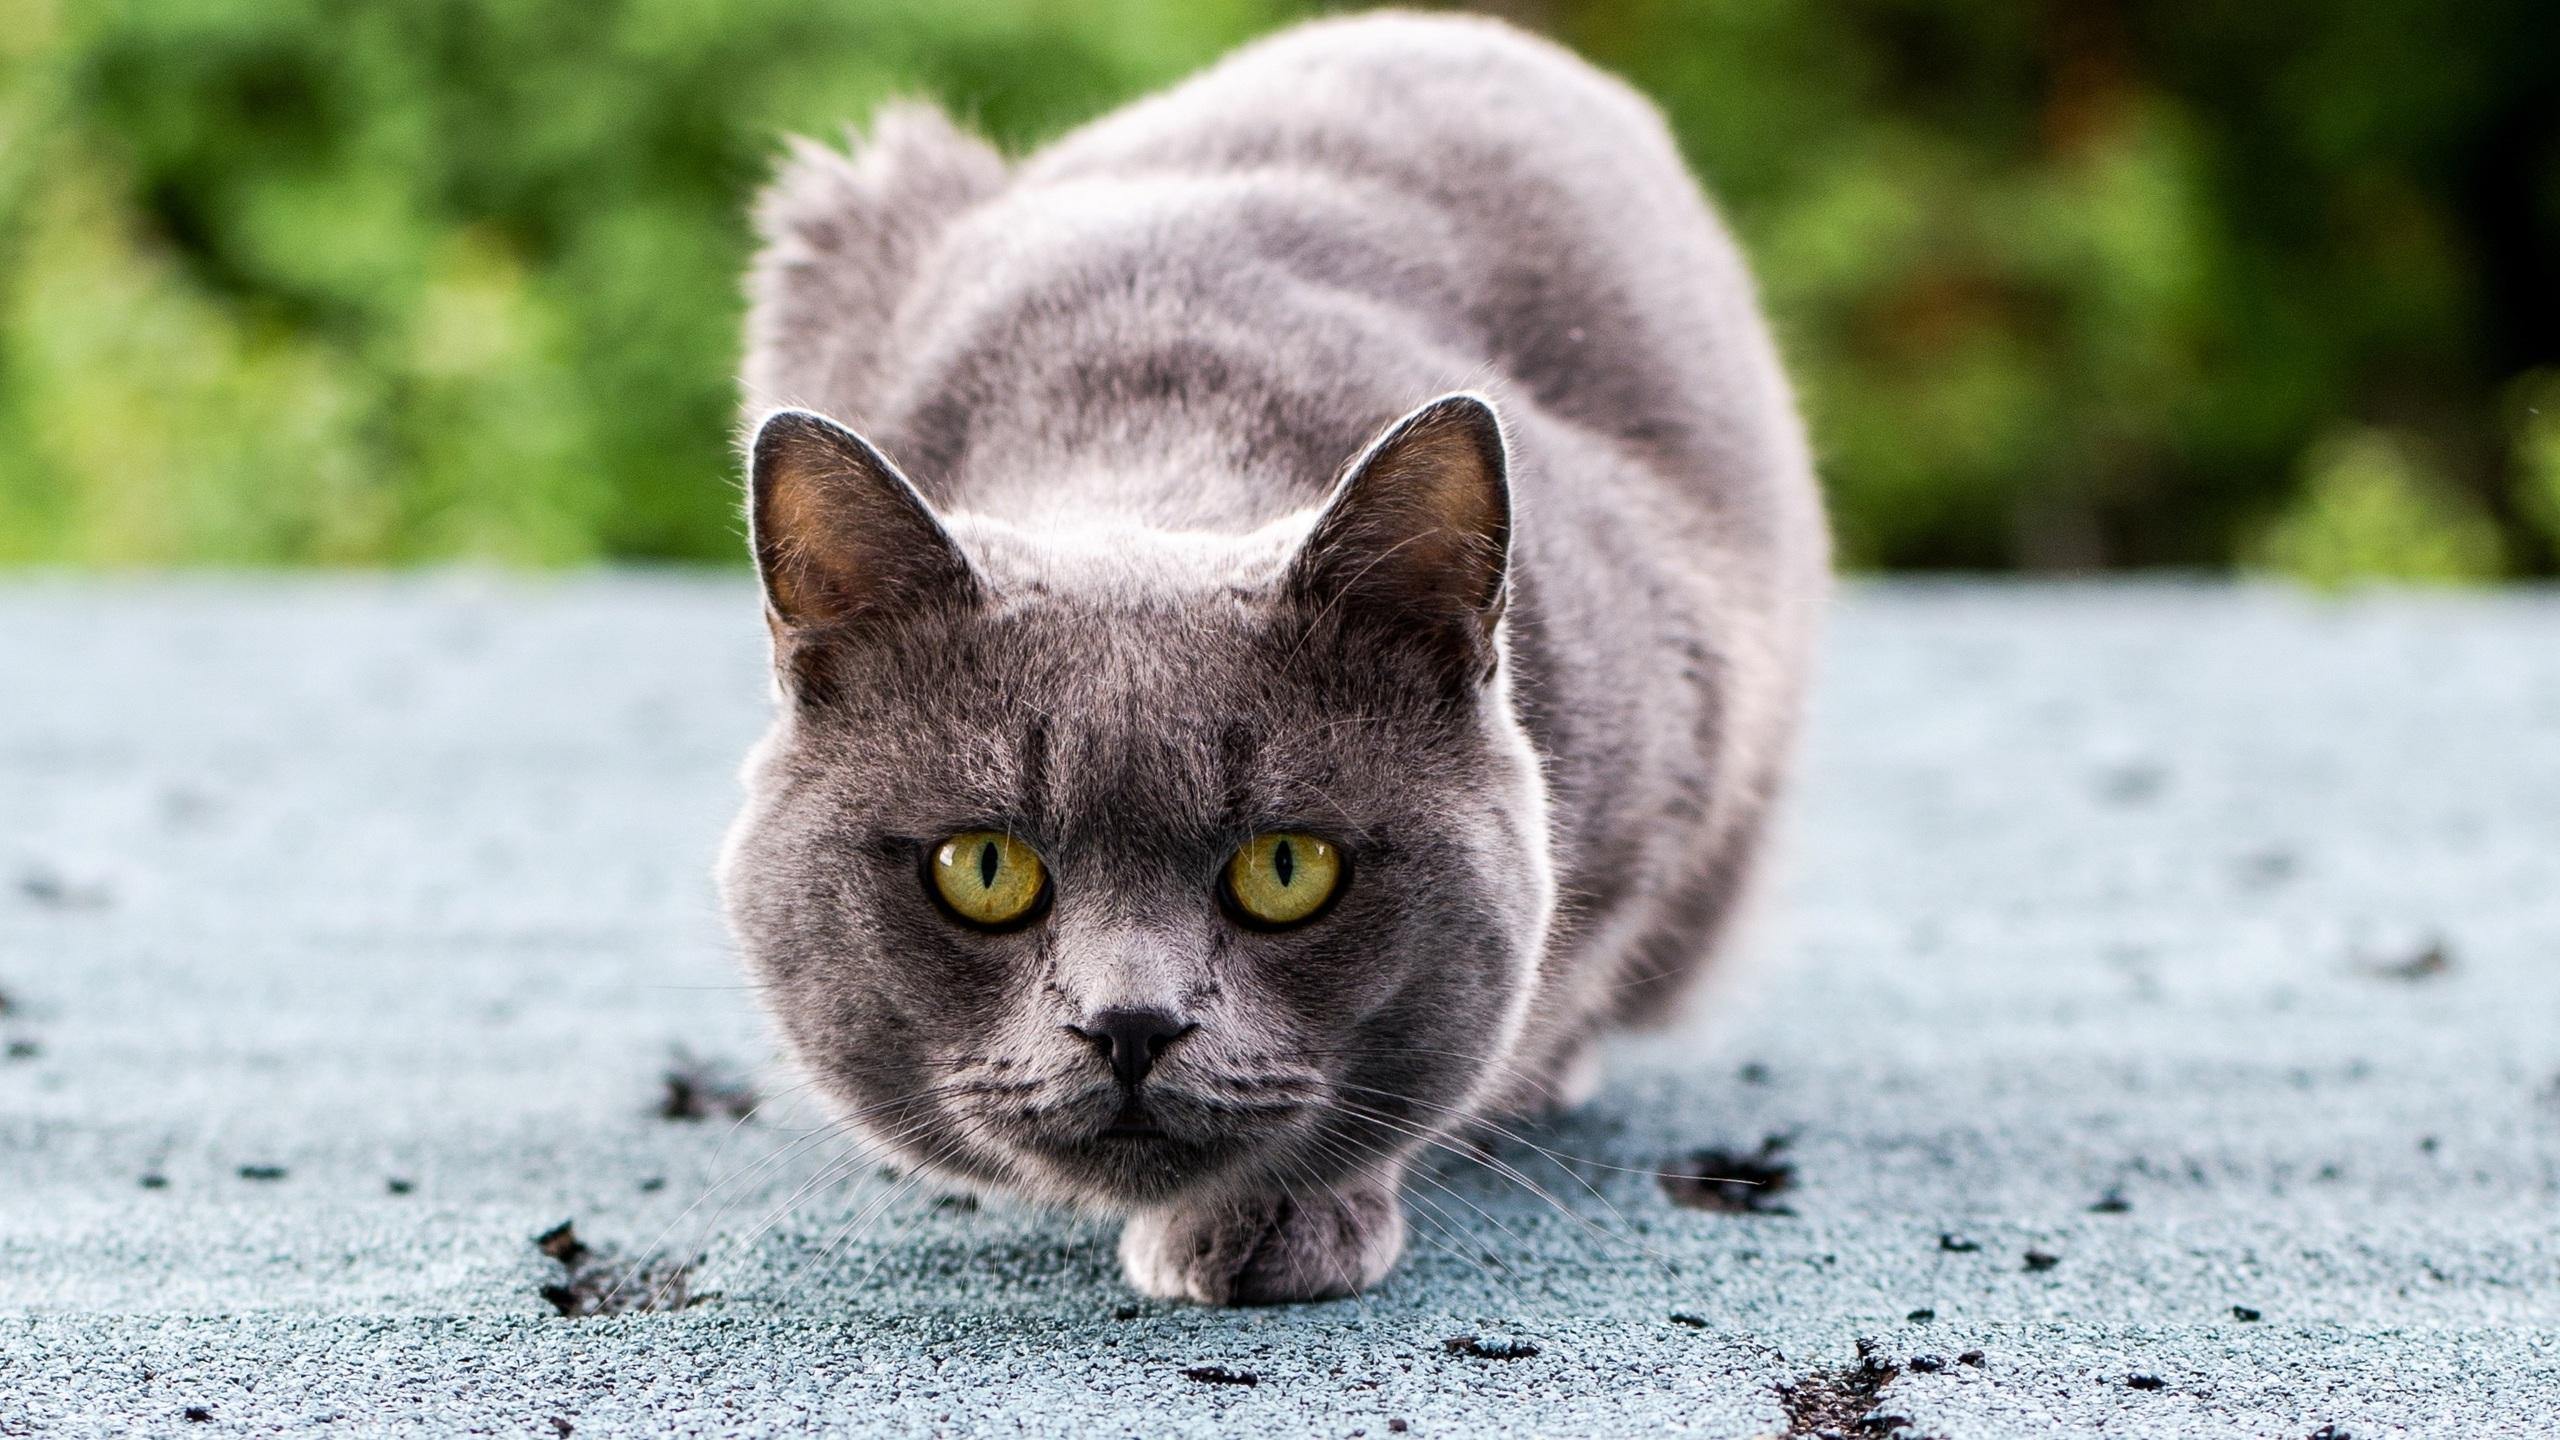 Токсоплазмоз на мягких лапах: опасна ли кошка в доме?